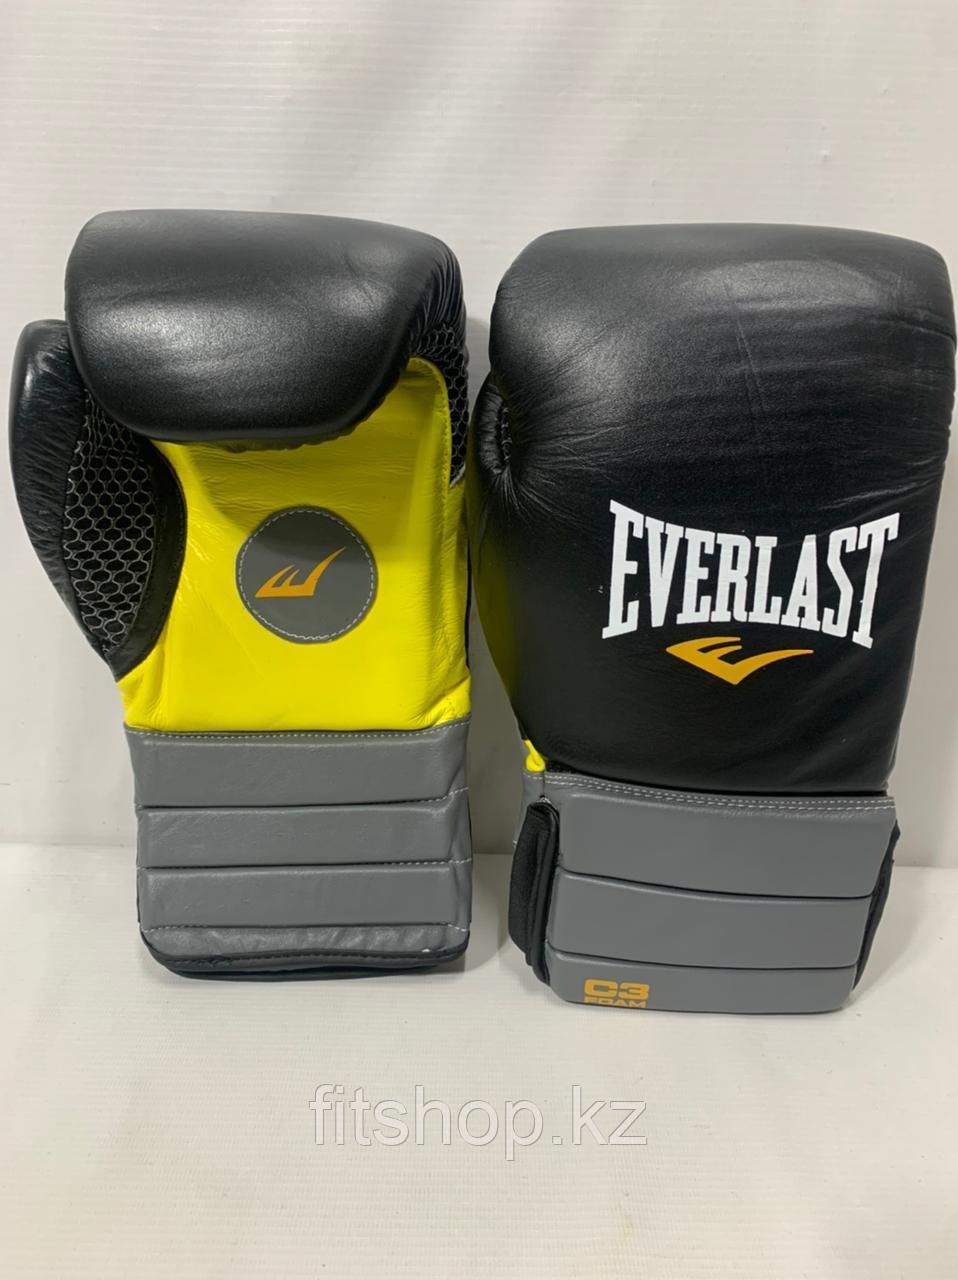 Боксерские перчатки Everlast ( натуральная кожа )  цвет черный / желтый